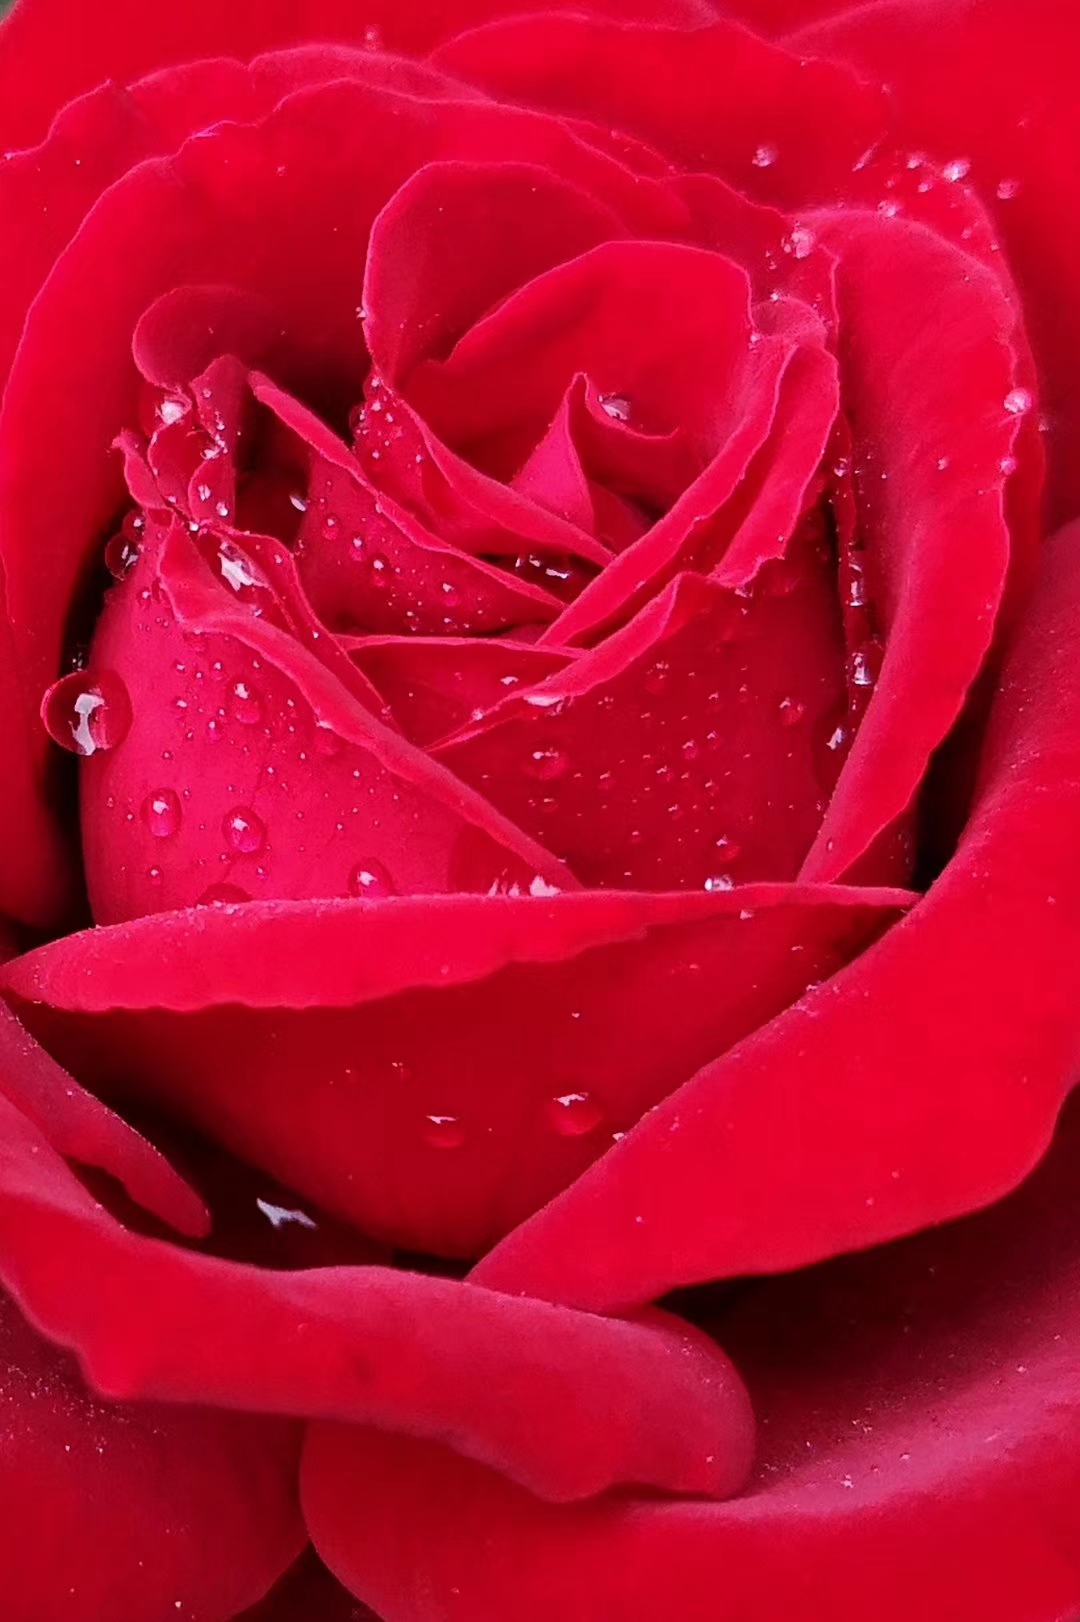 上游读图丨李立峰:含泪奔跑的玫瑰